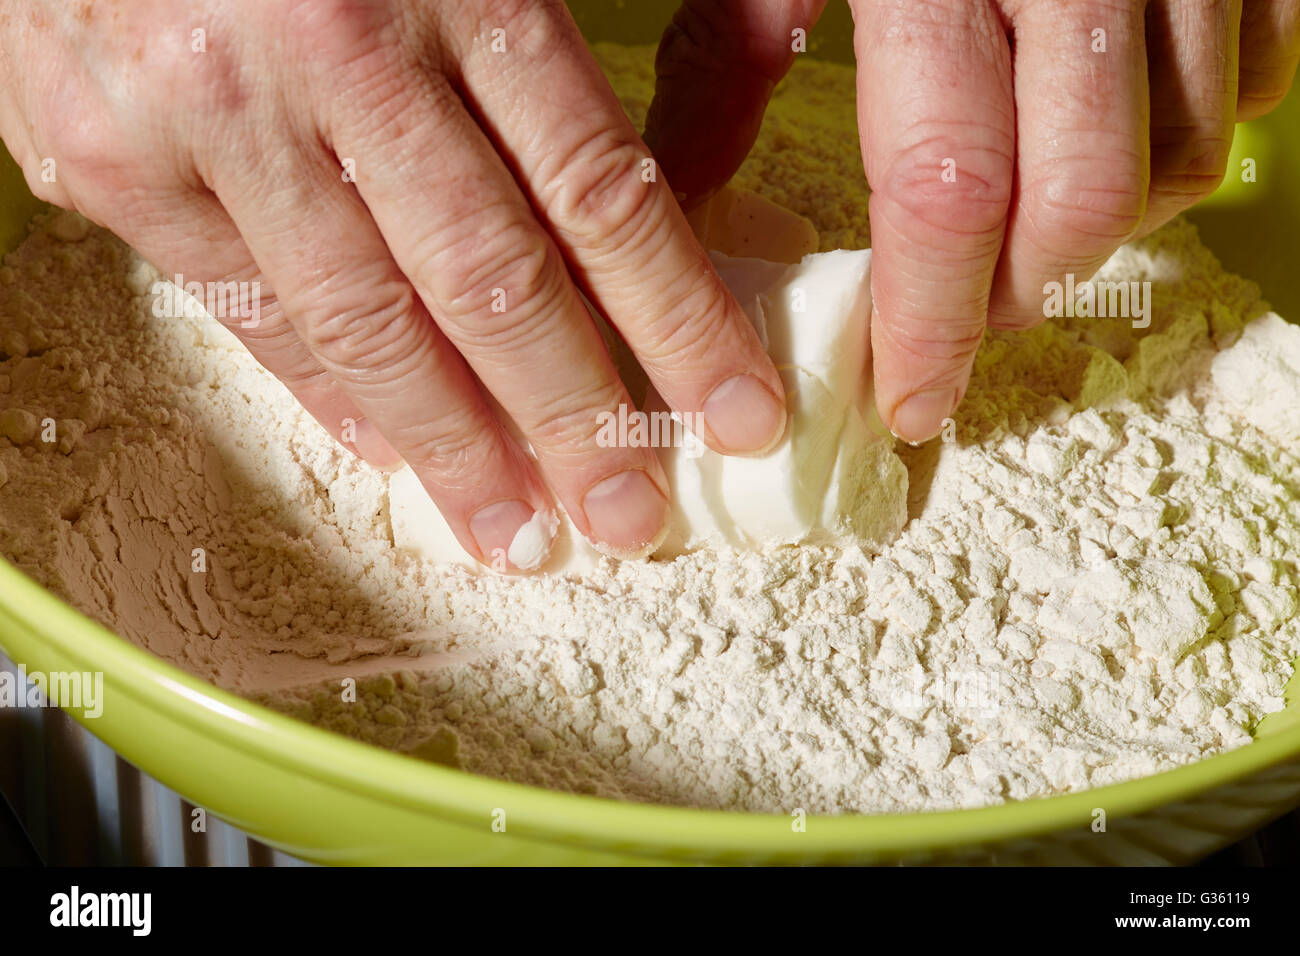 Hände des Mannes kneten einen Torte (oder pastös) Kruste Teig mit Mehl und Verkürzung Stockfoto